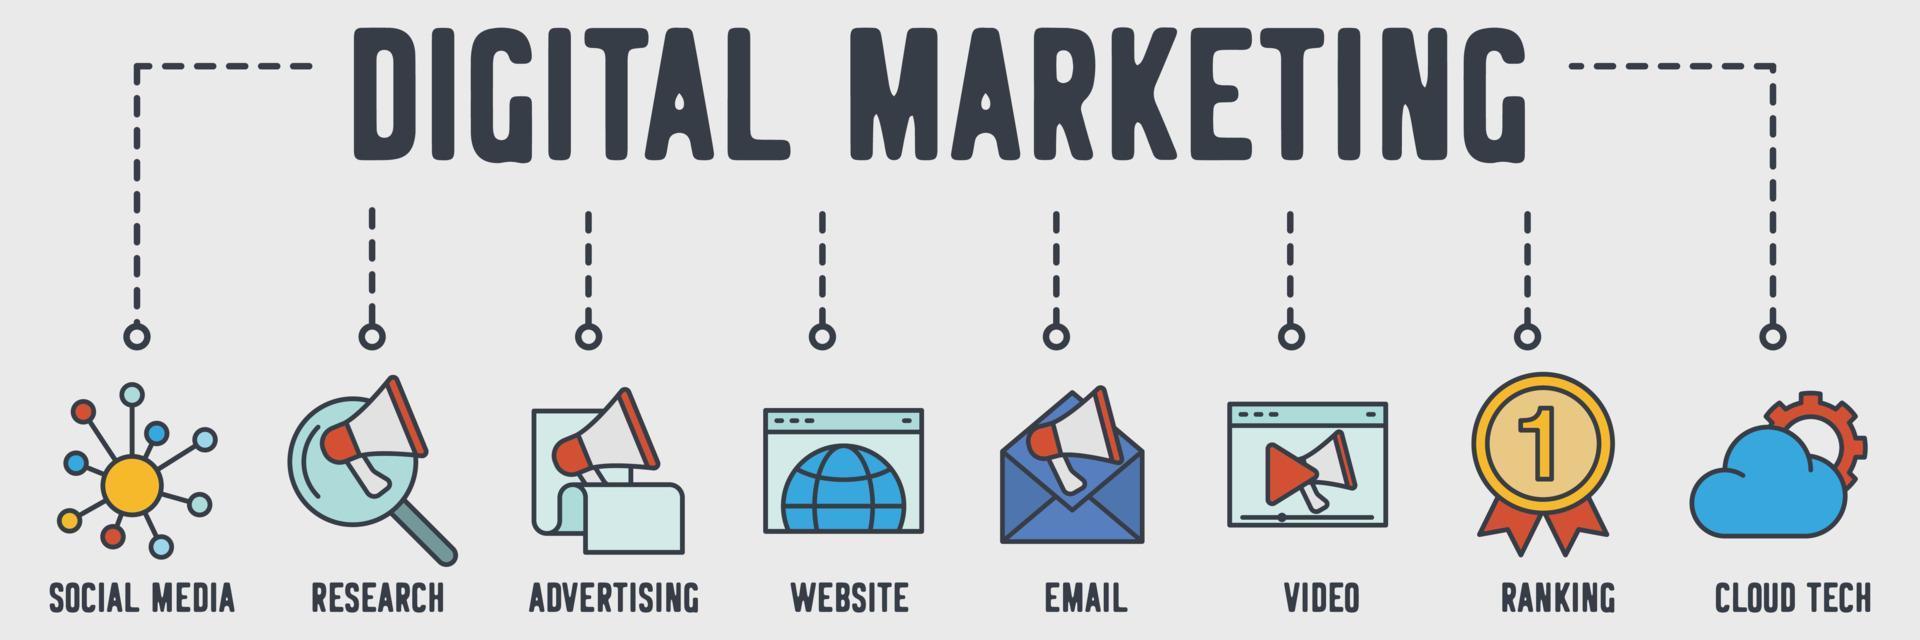 digitale marketing banner web pictogram. wereldwijde business, seo, webdesign, ankertekst, strategie, winkelwagen vector illustratie concept.